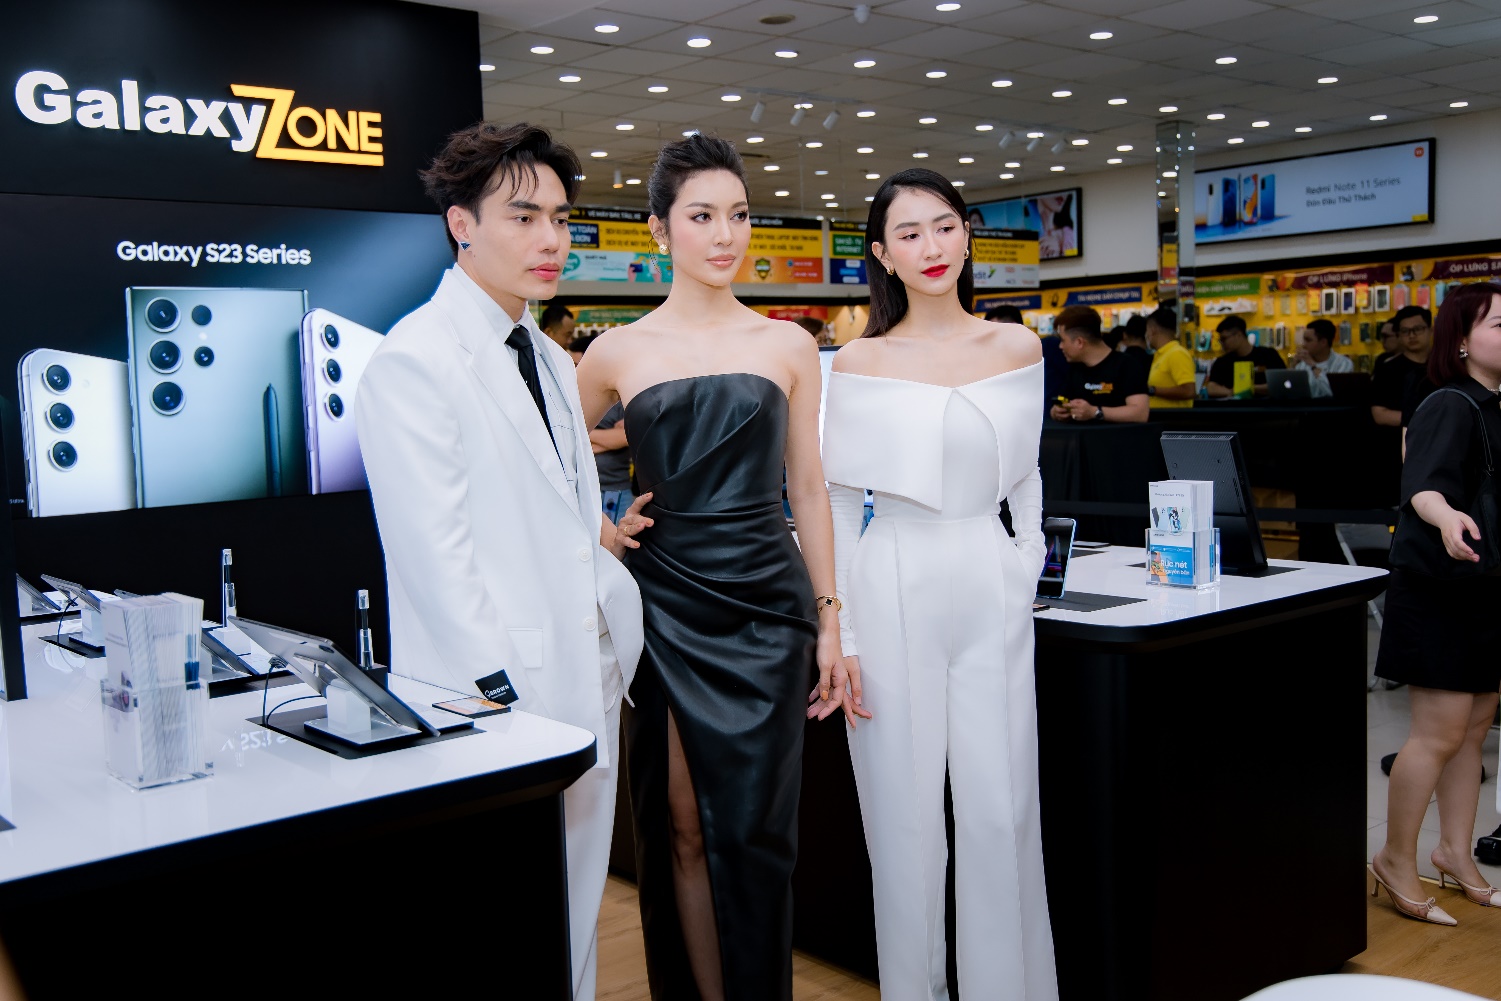 Giới trẻ háo hức nhận Galaxy S23 Series sớm trong ngày khai trương cửa hàng trải nghiệm Samsung GalaxyZone - ảnh 5